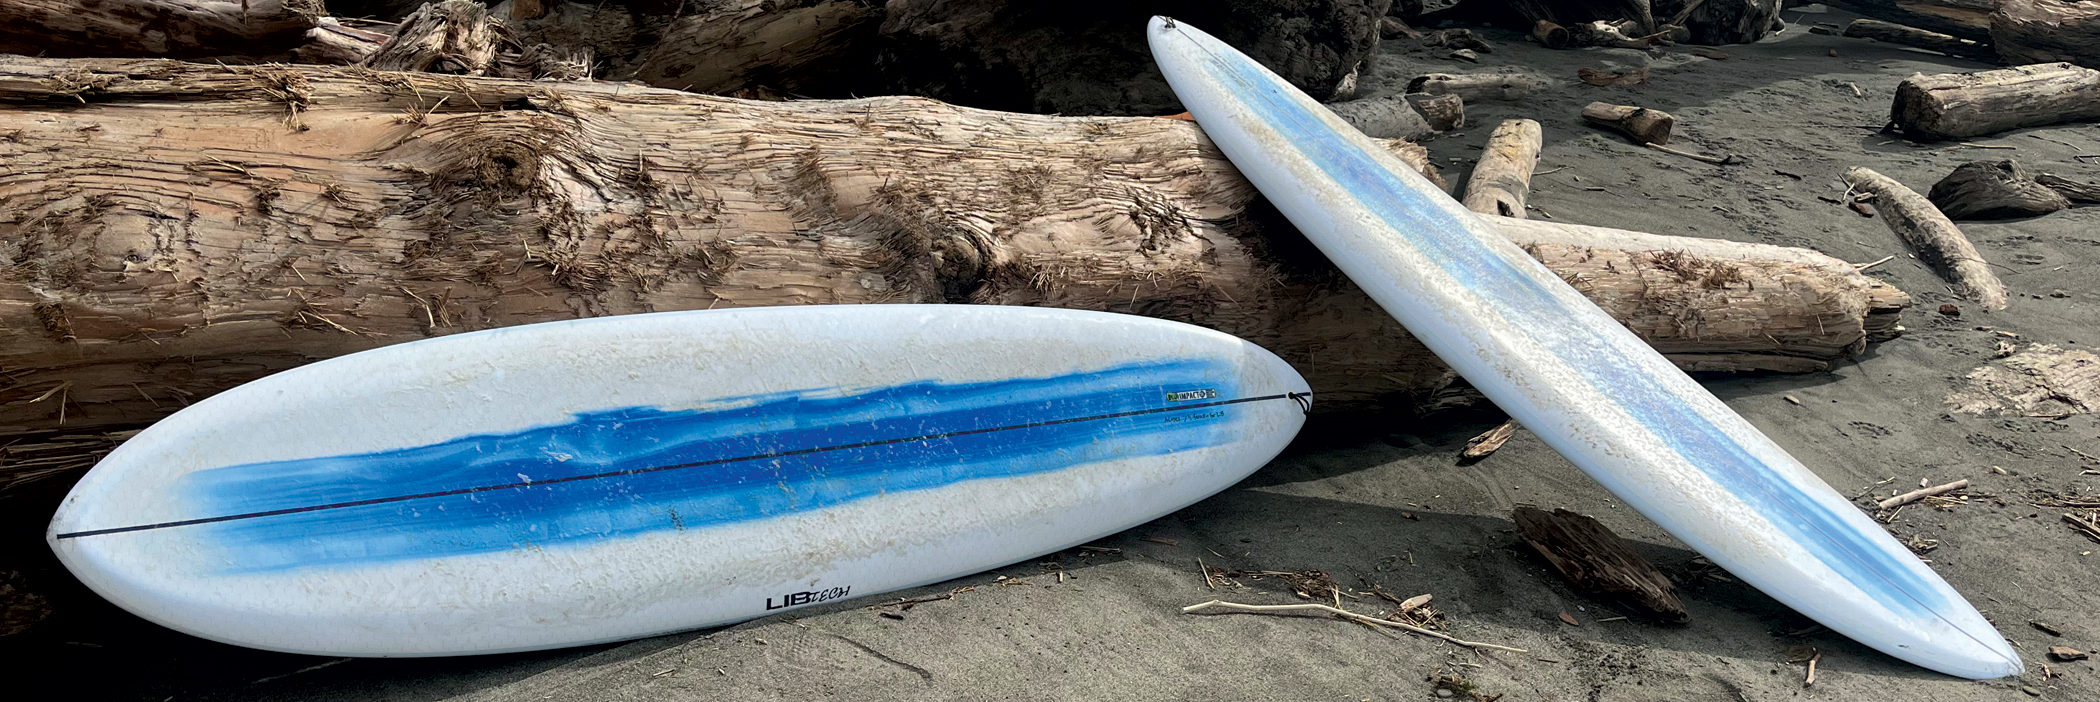 Lib Tech Surf Terrapin Surfboard by Alex Lopez